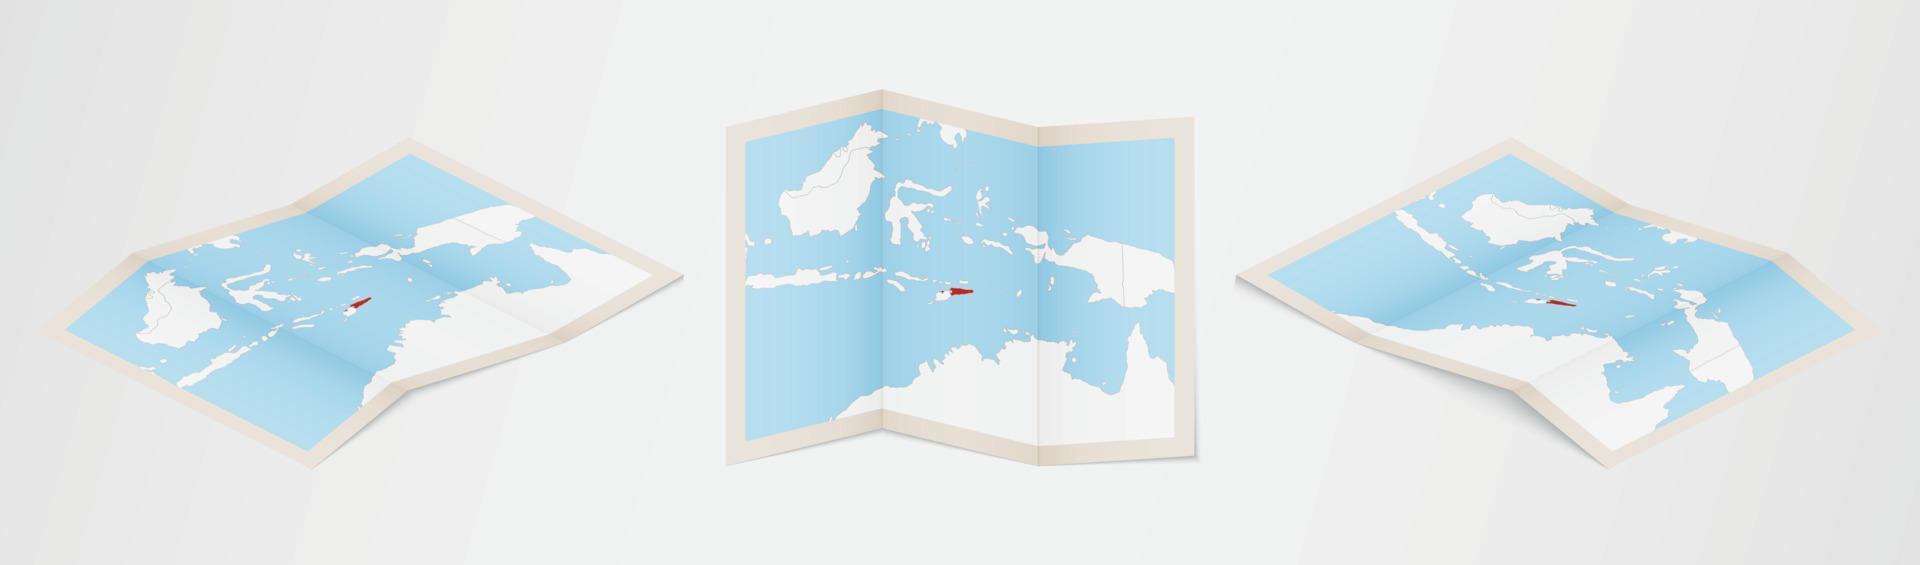 mapa dobrado de timor-leste em três versões diferentes. vetor